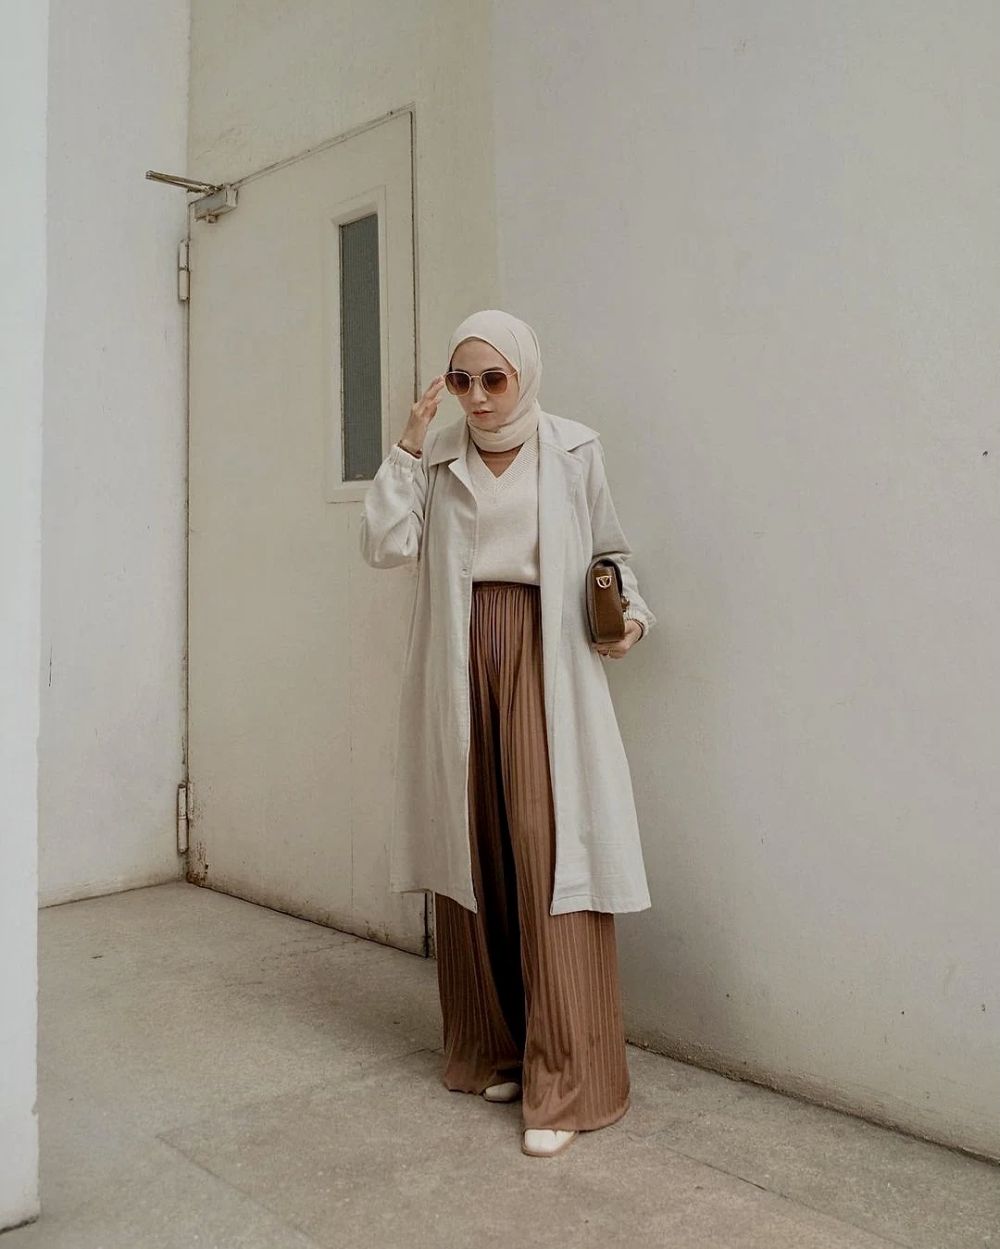 7 Ide Outfit Long Outer dan Hijab untuk Buka Bersama, Tampil Stylish!